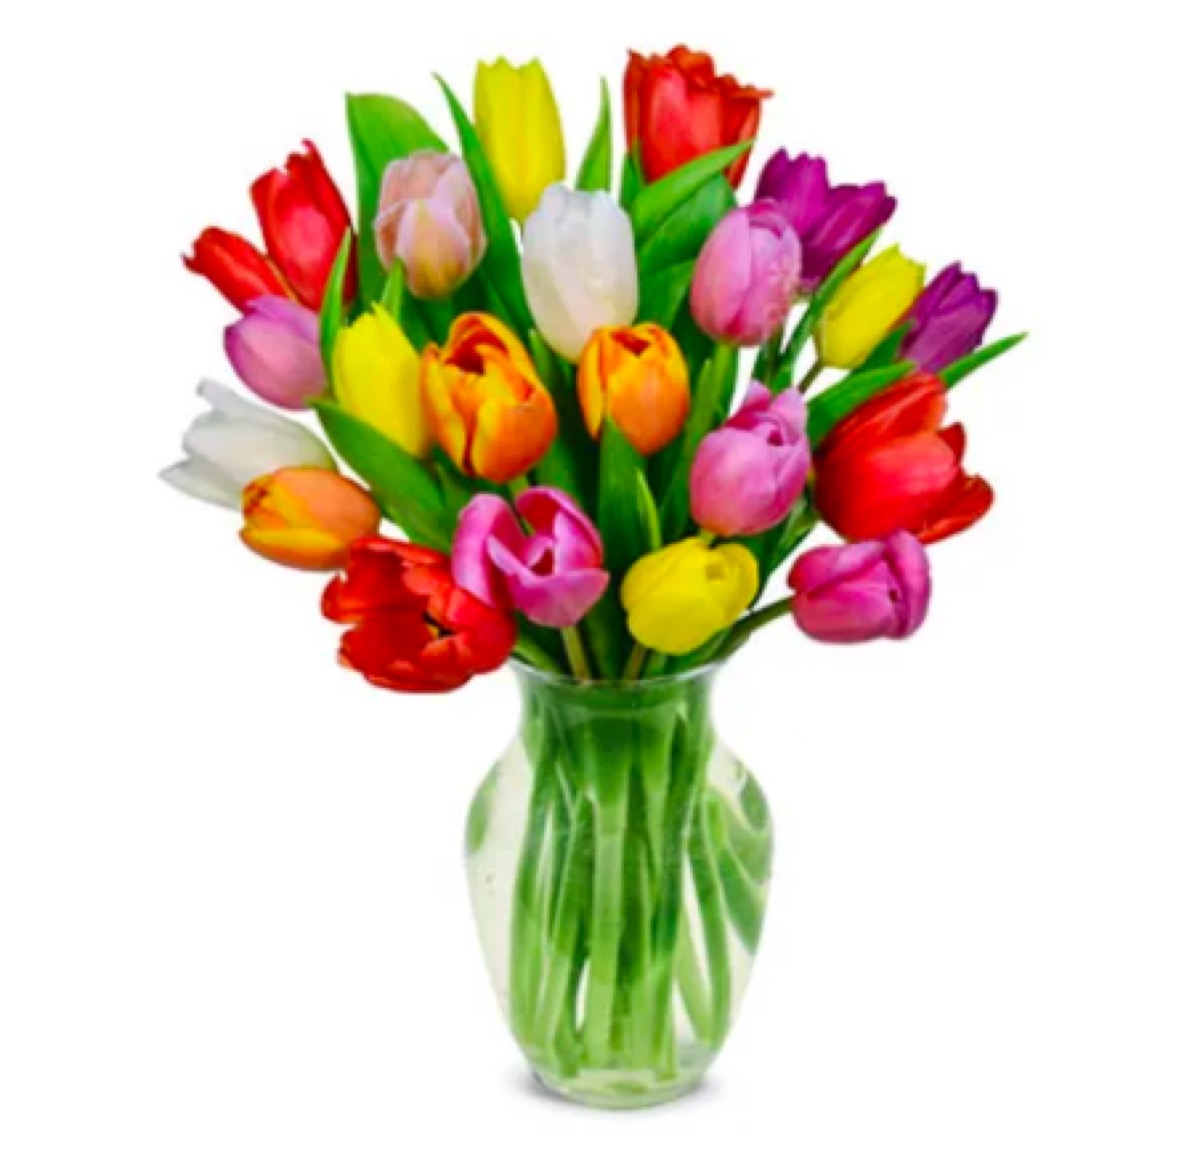 20 rainbow tulips send flowers